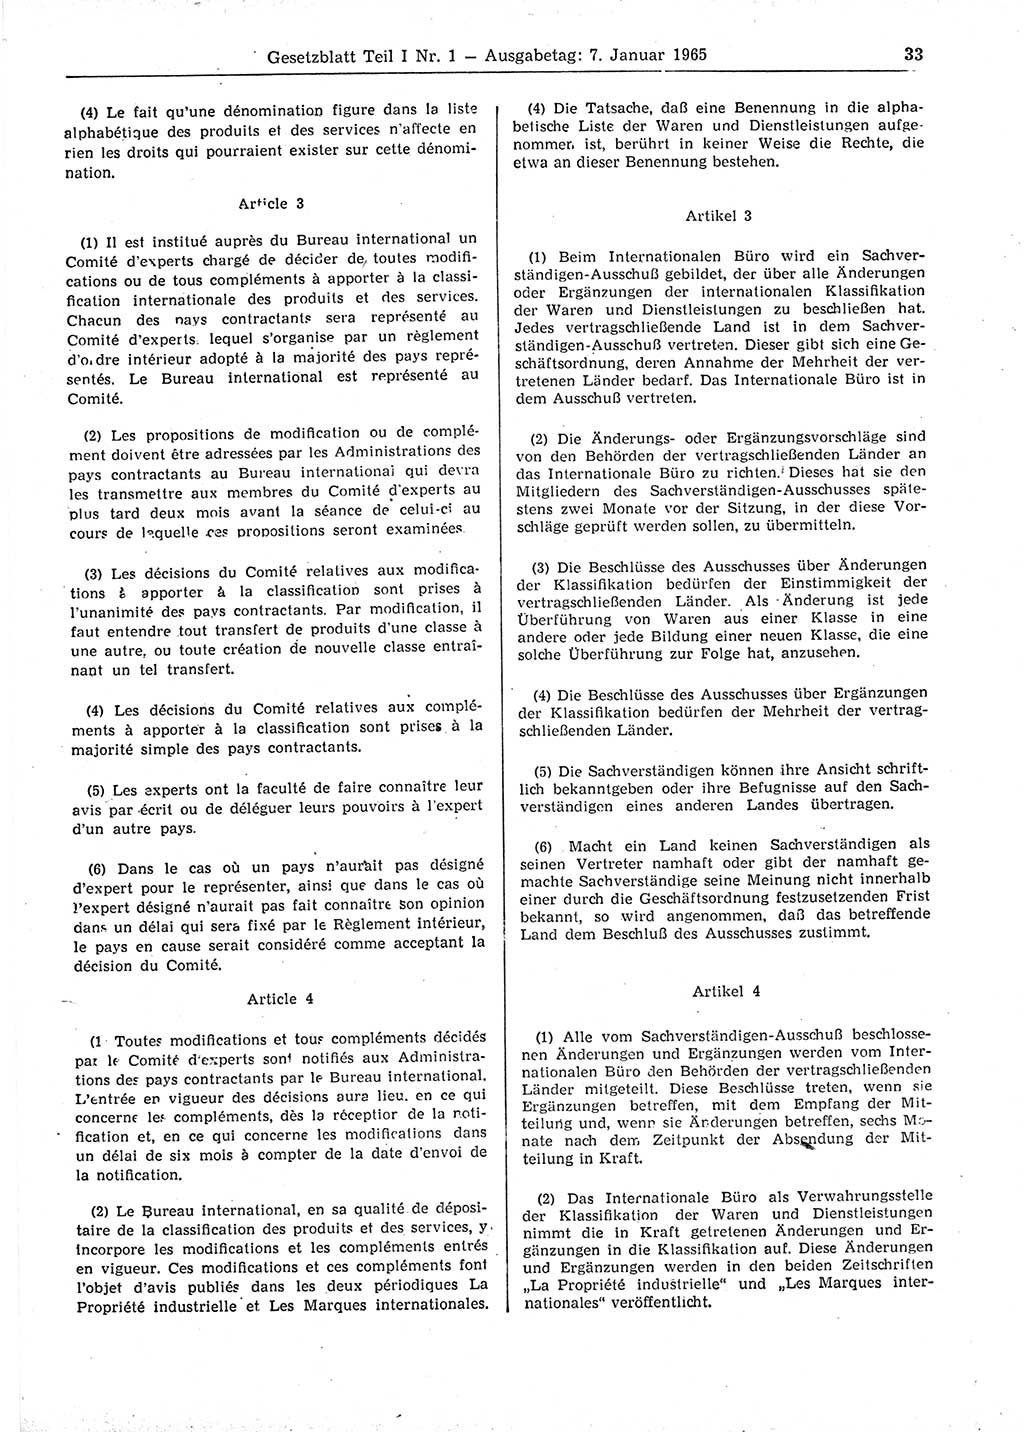 Gesetzblatt (GBl.) der Deutschen Demokratischen Republik (DDR) Teil Ⅰ 1965, Seite 33 (GBl. DDR Ⅰ 1965, S. 33)